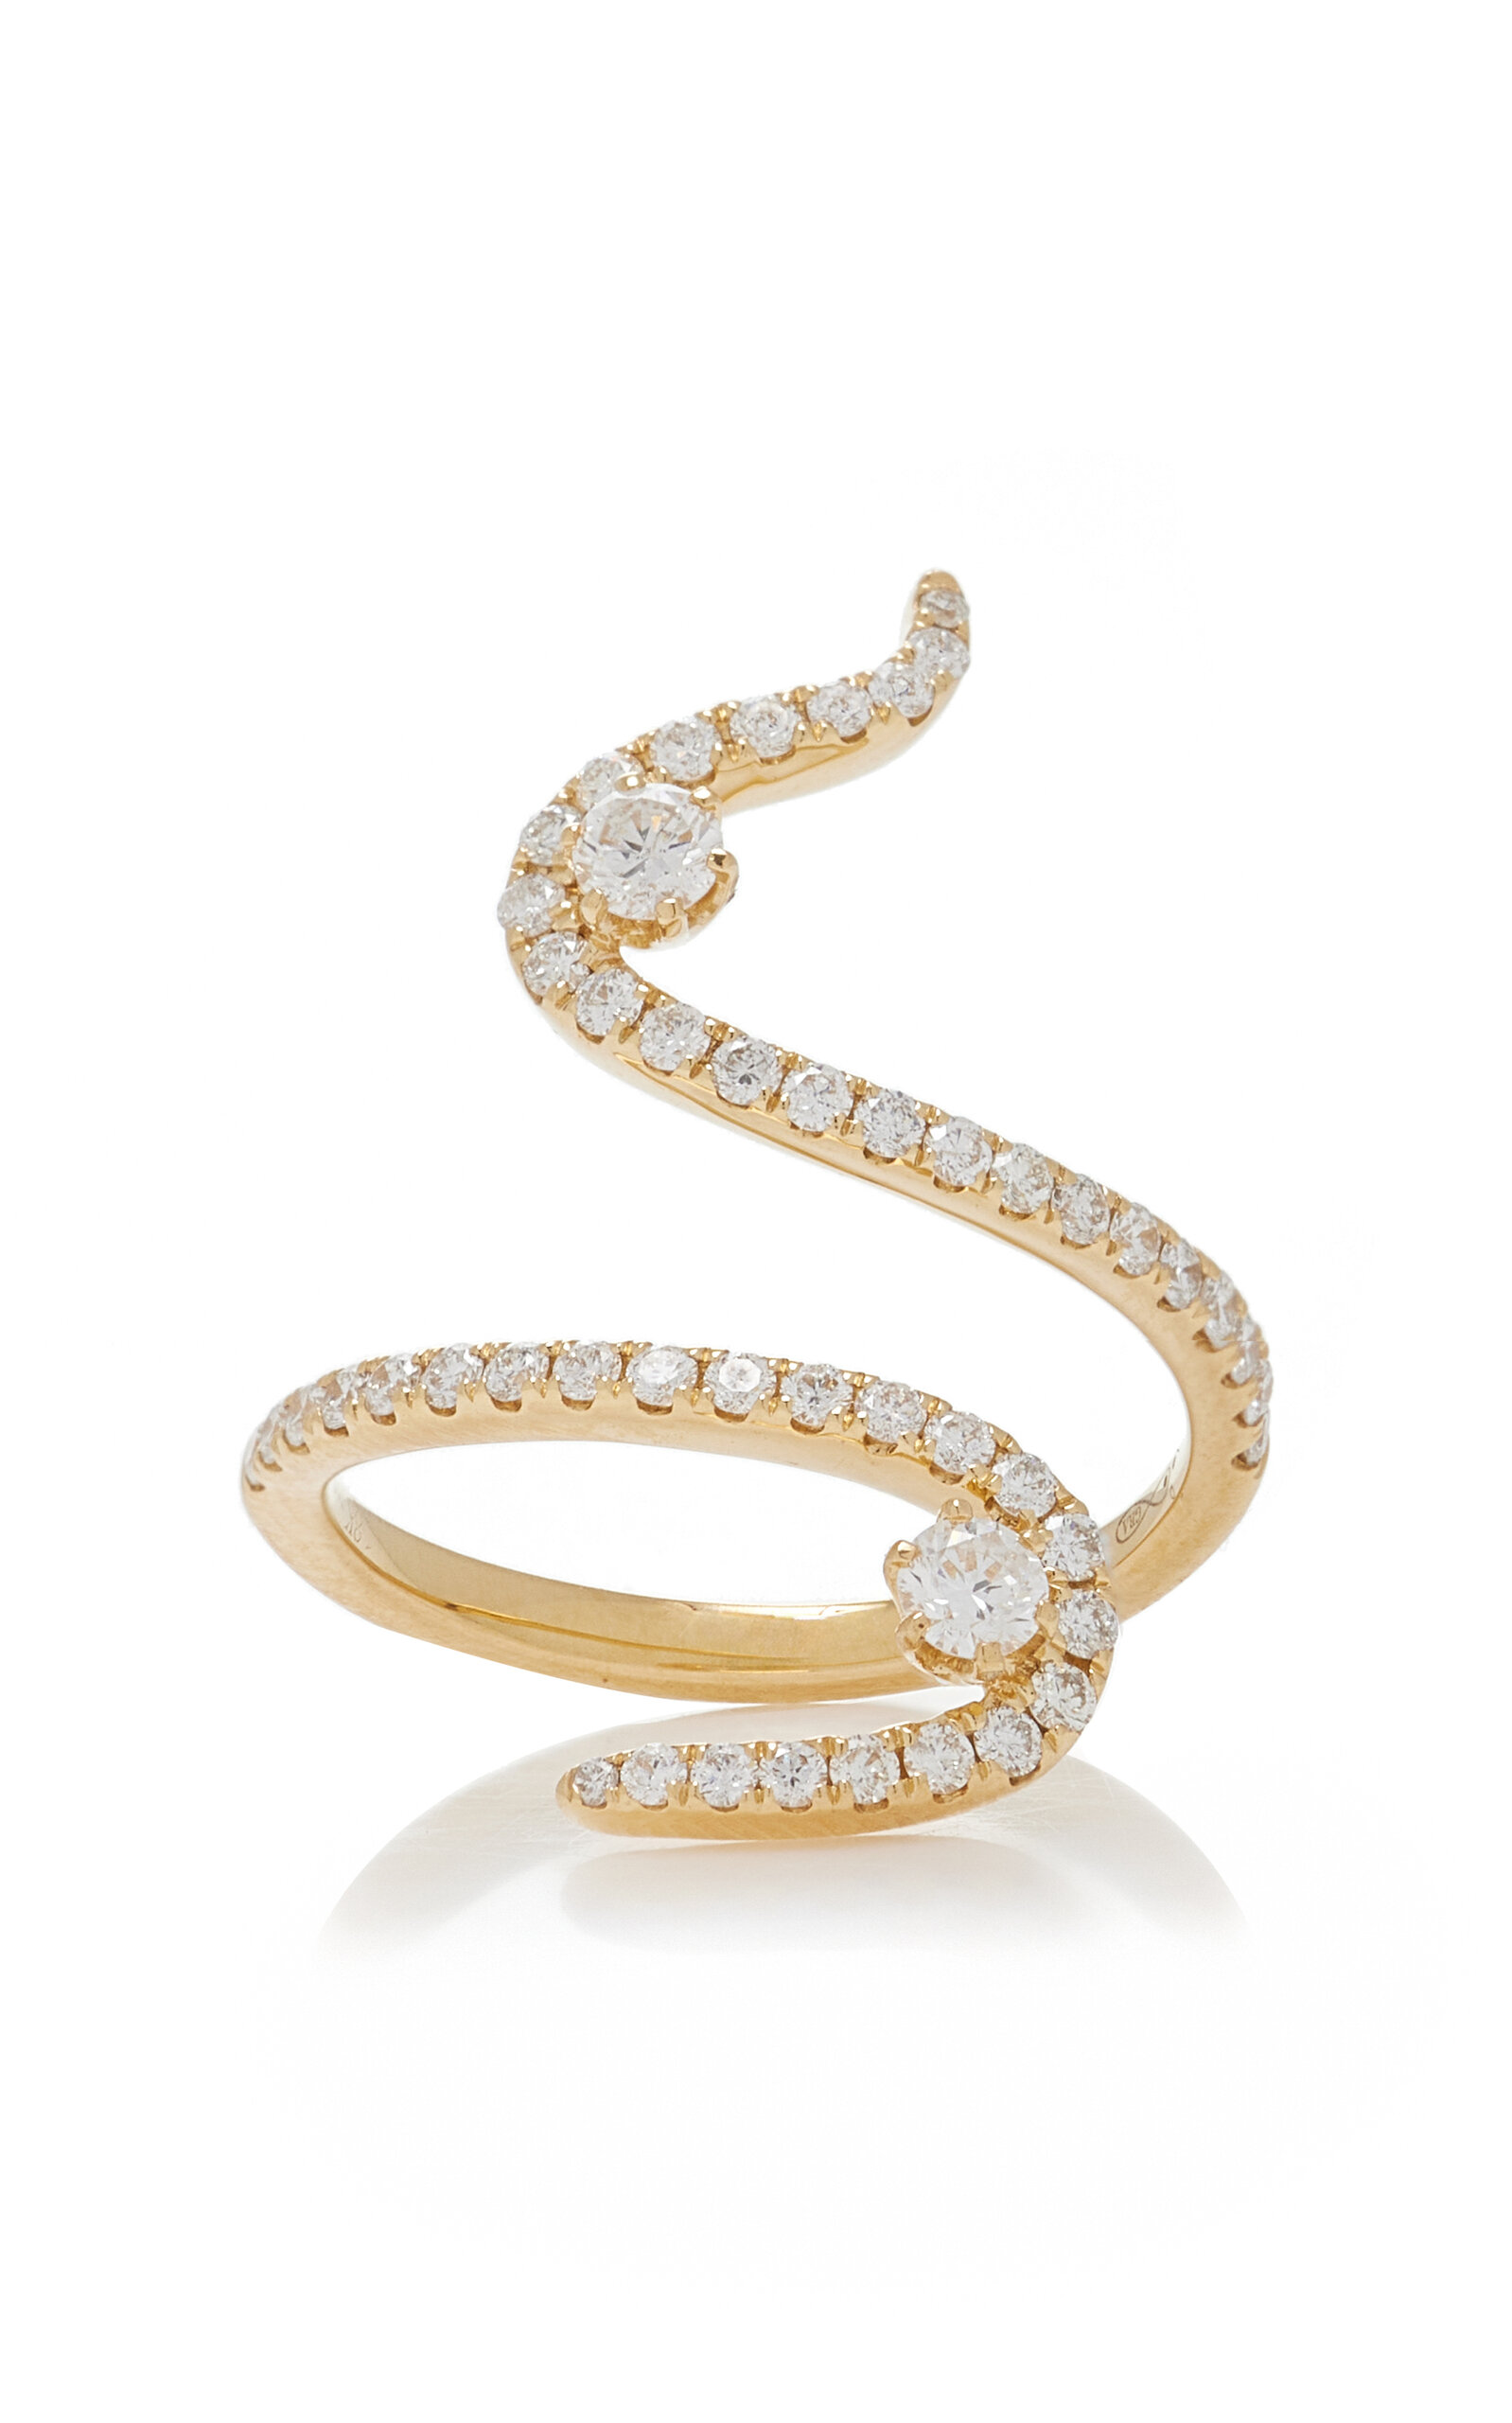 Swirl 18K Yellow Gold Diamond Ring